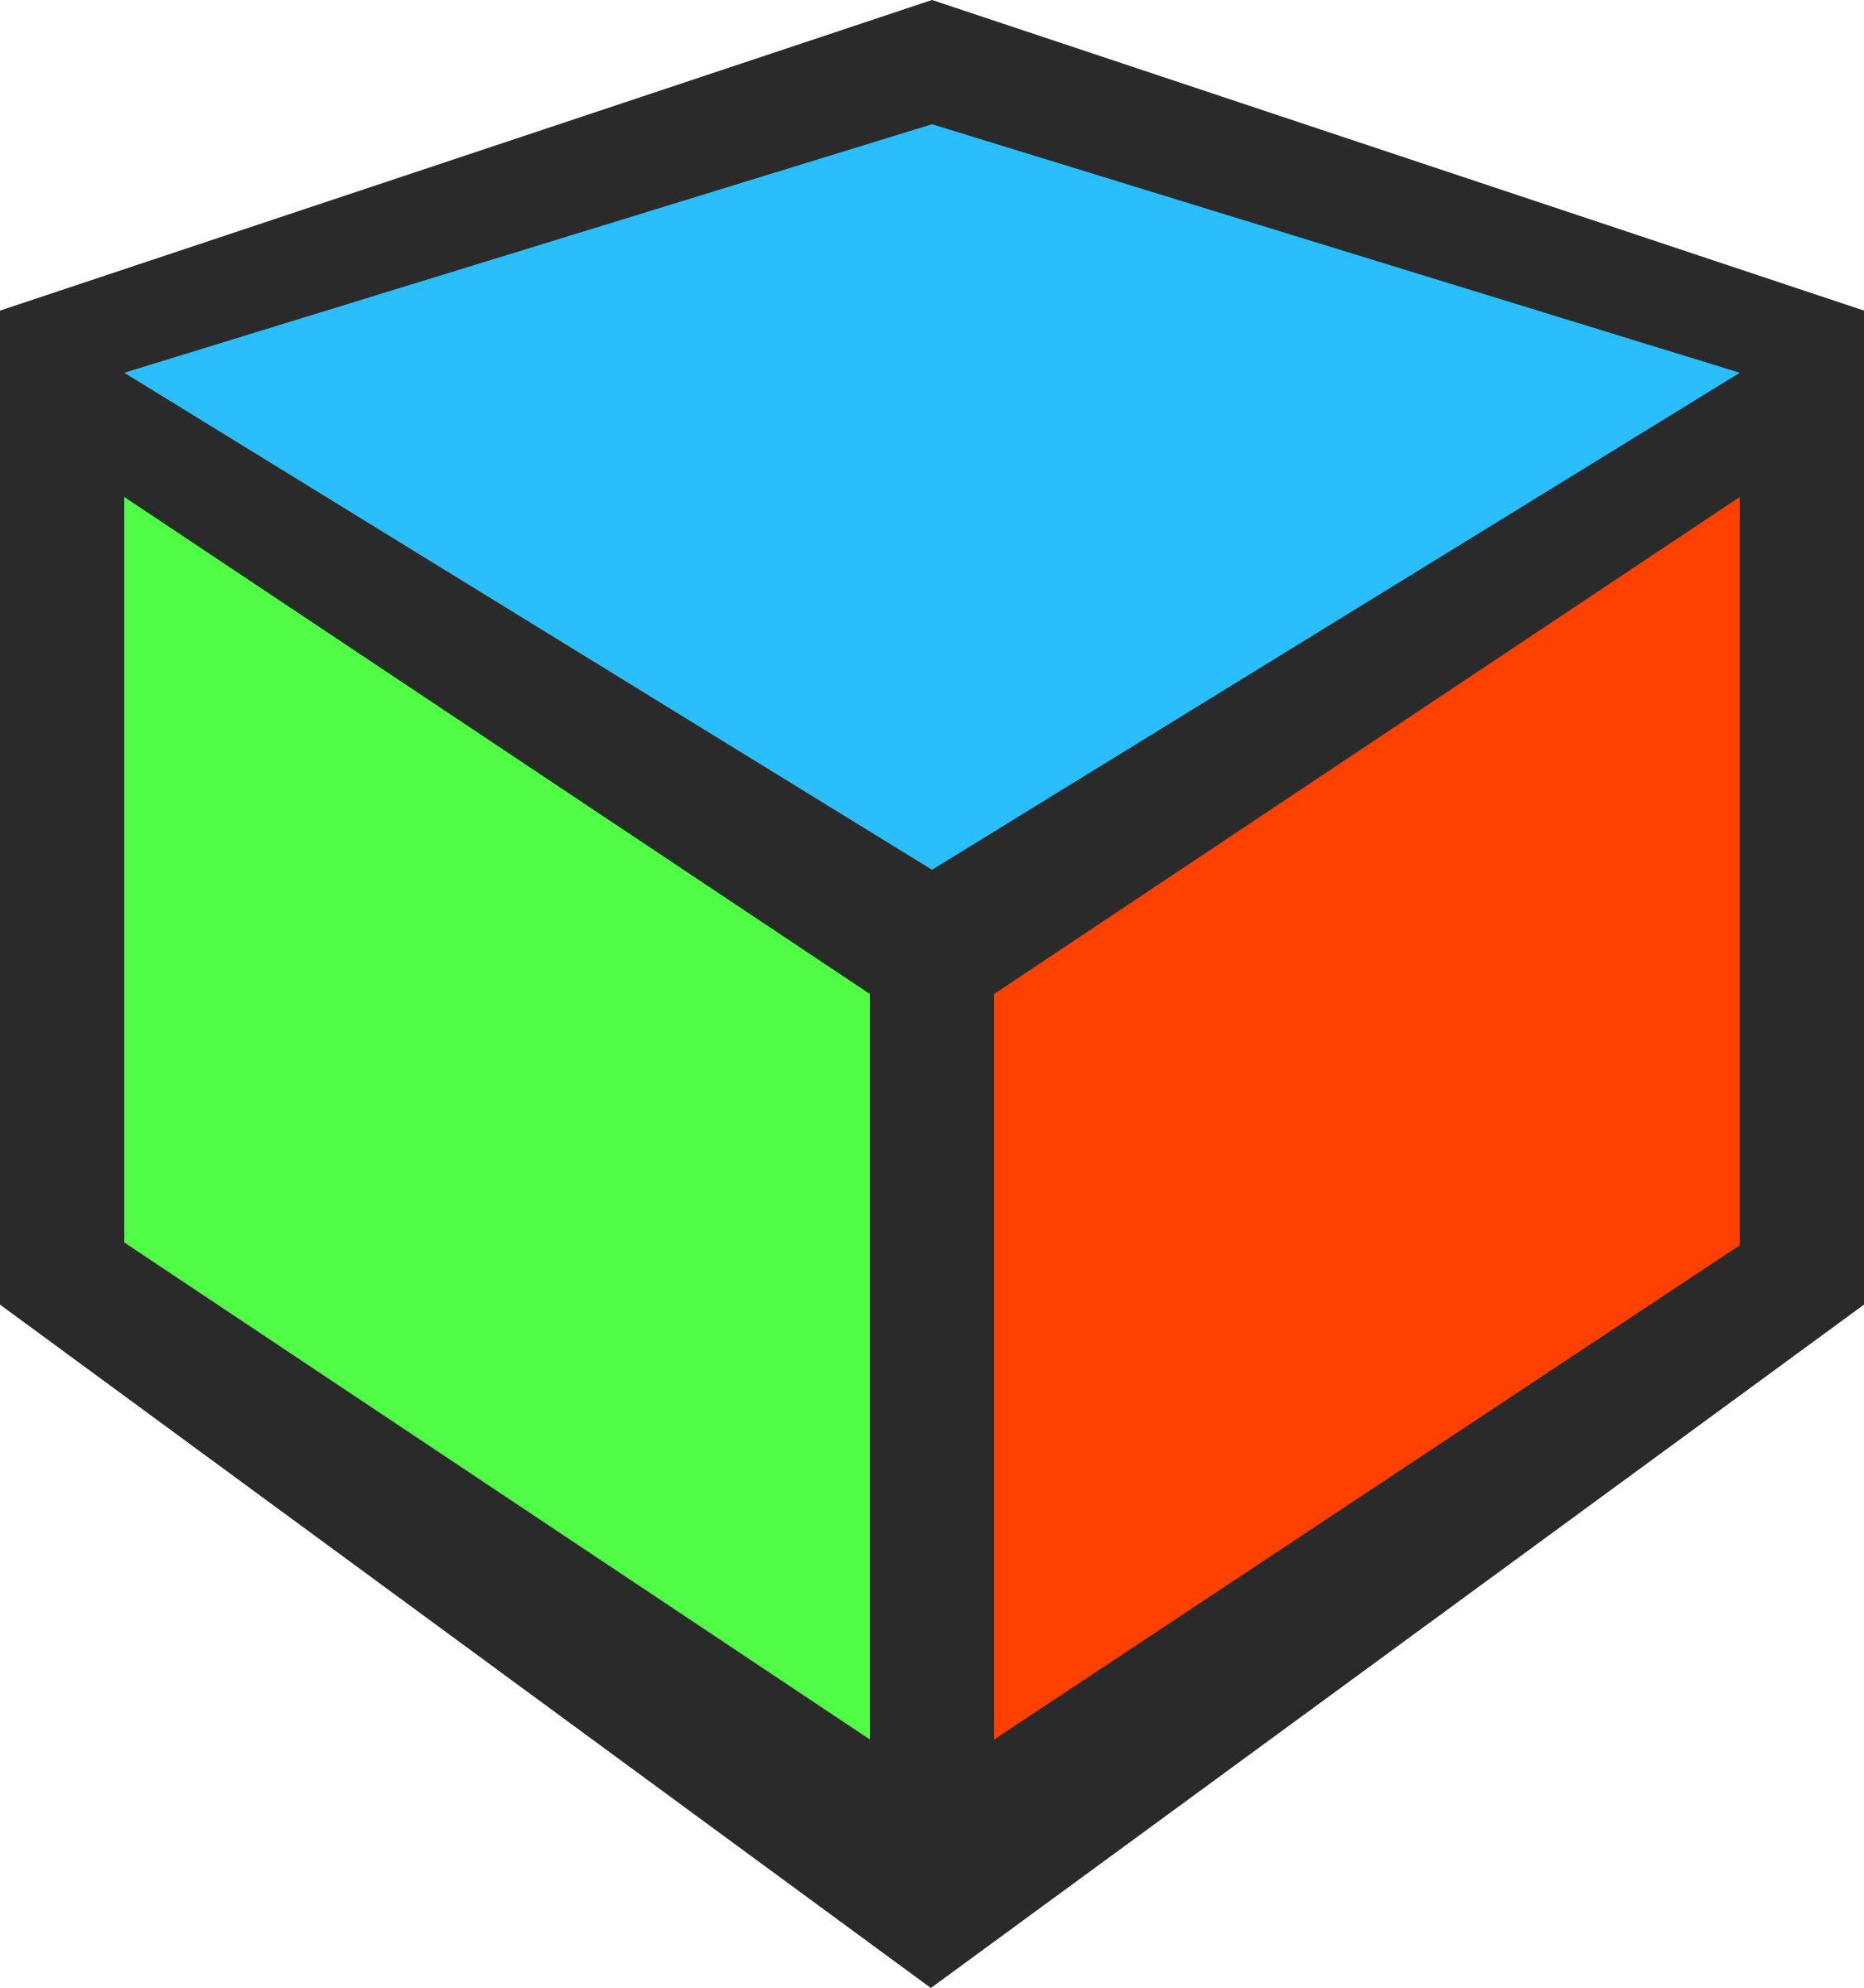 Square clipart square block. d cube icon. square clipart square block clipa...